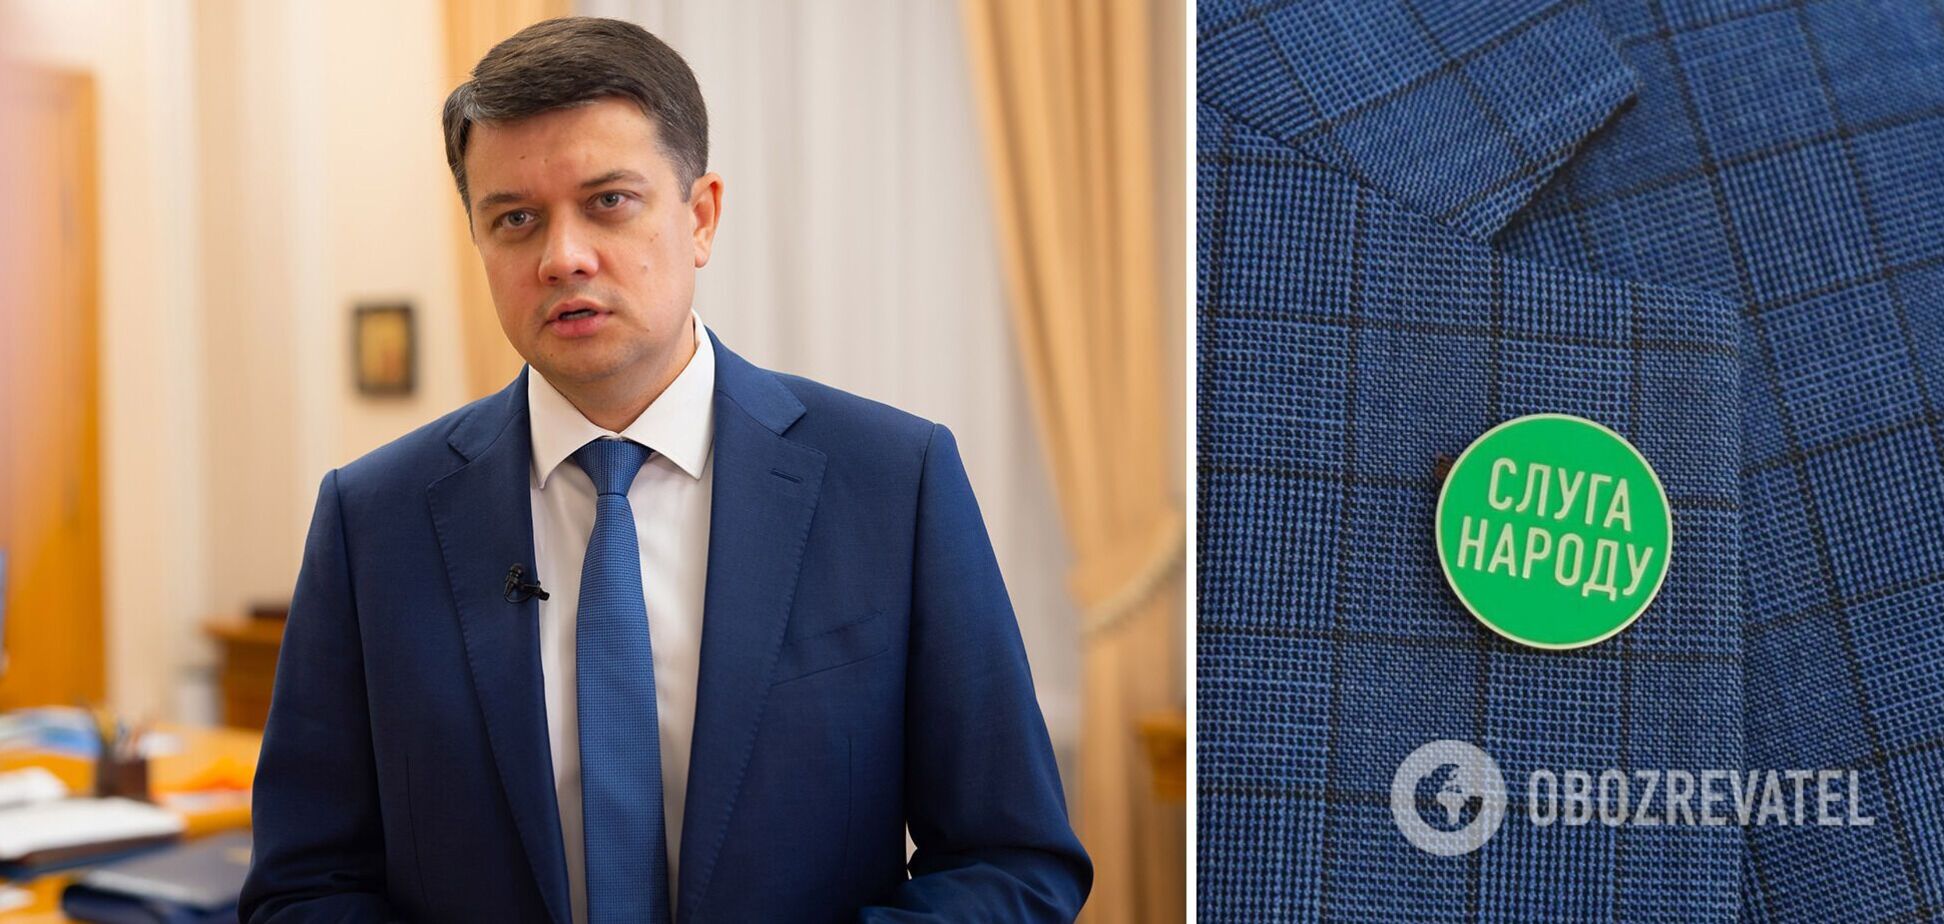 Разумков пригласил 'слуг' обсудить его 'неудовлетворительную работу' на посту главы ВР